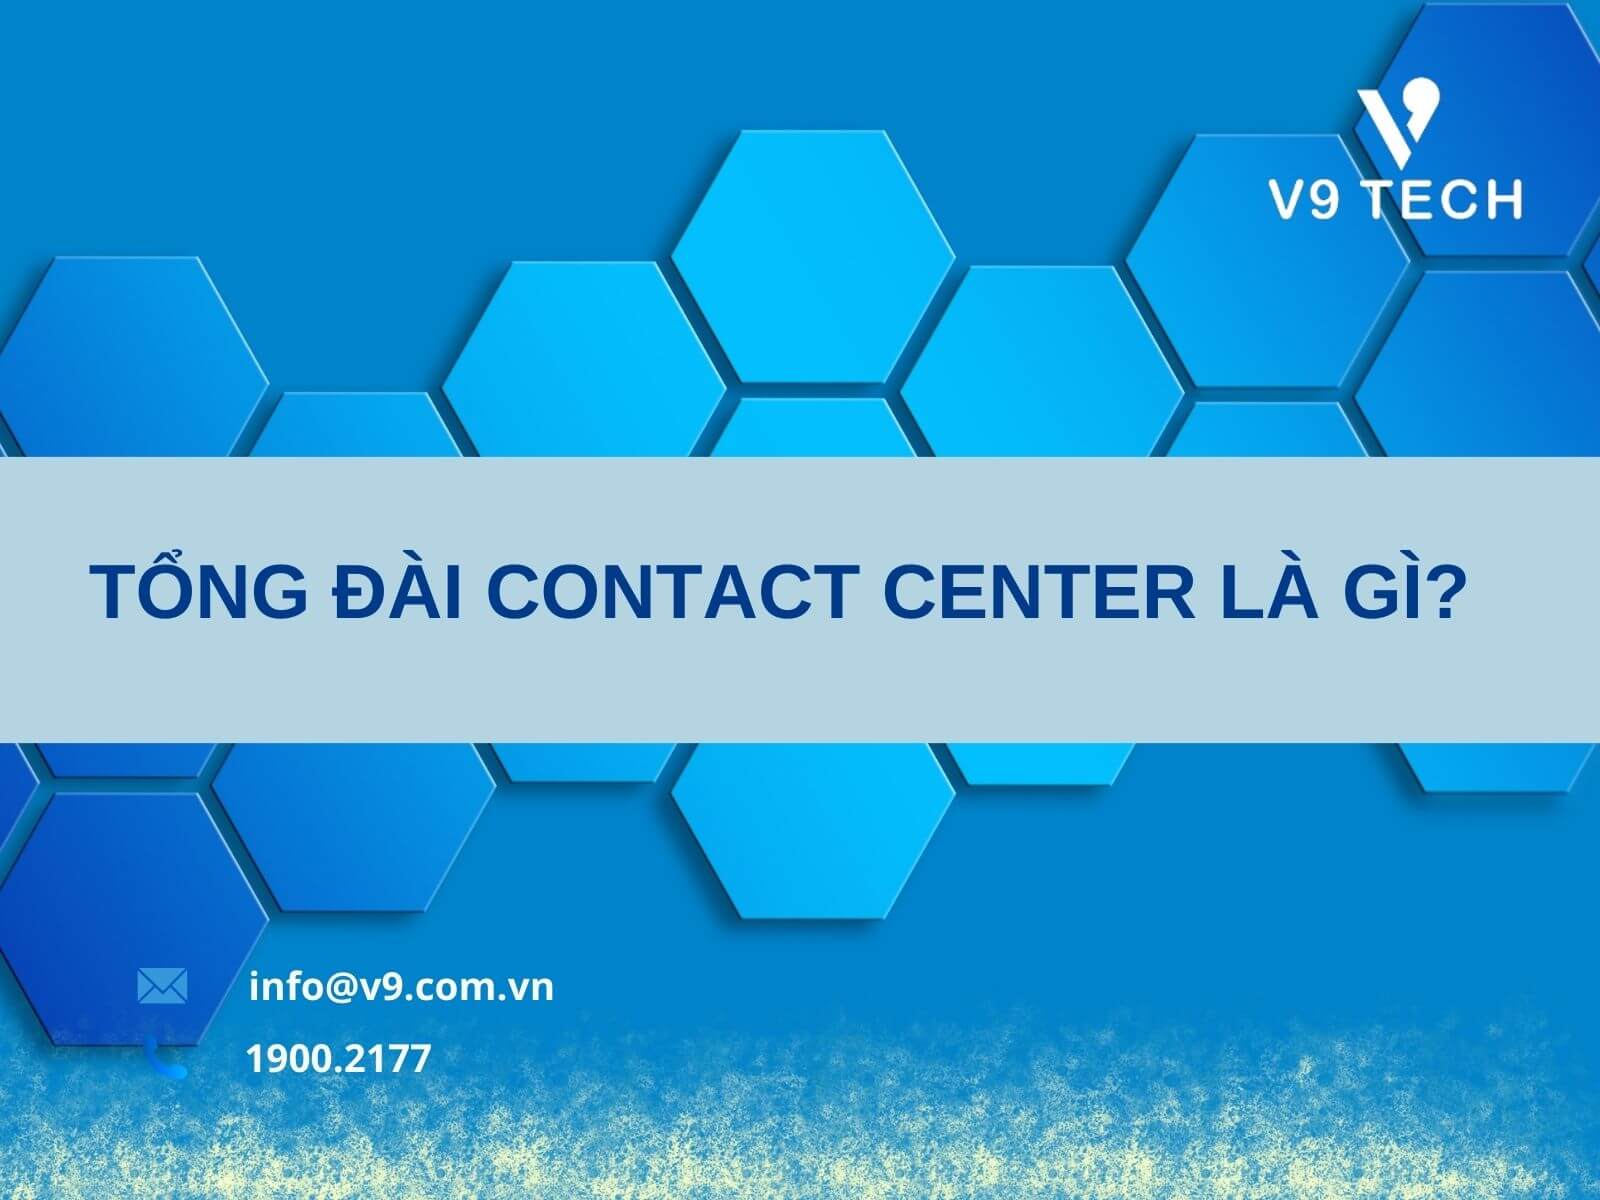  tong dai contact center 